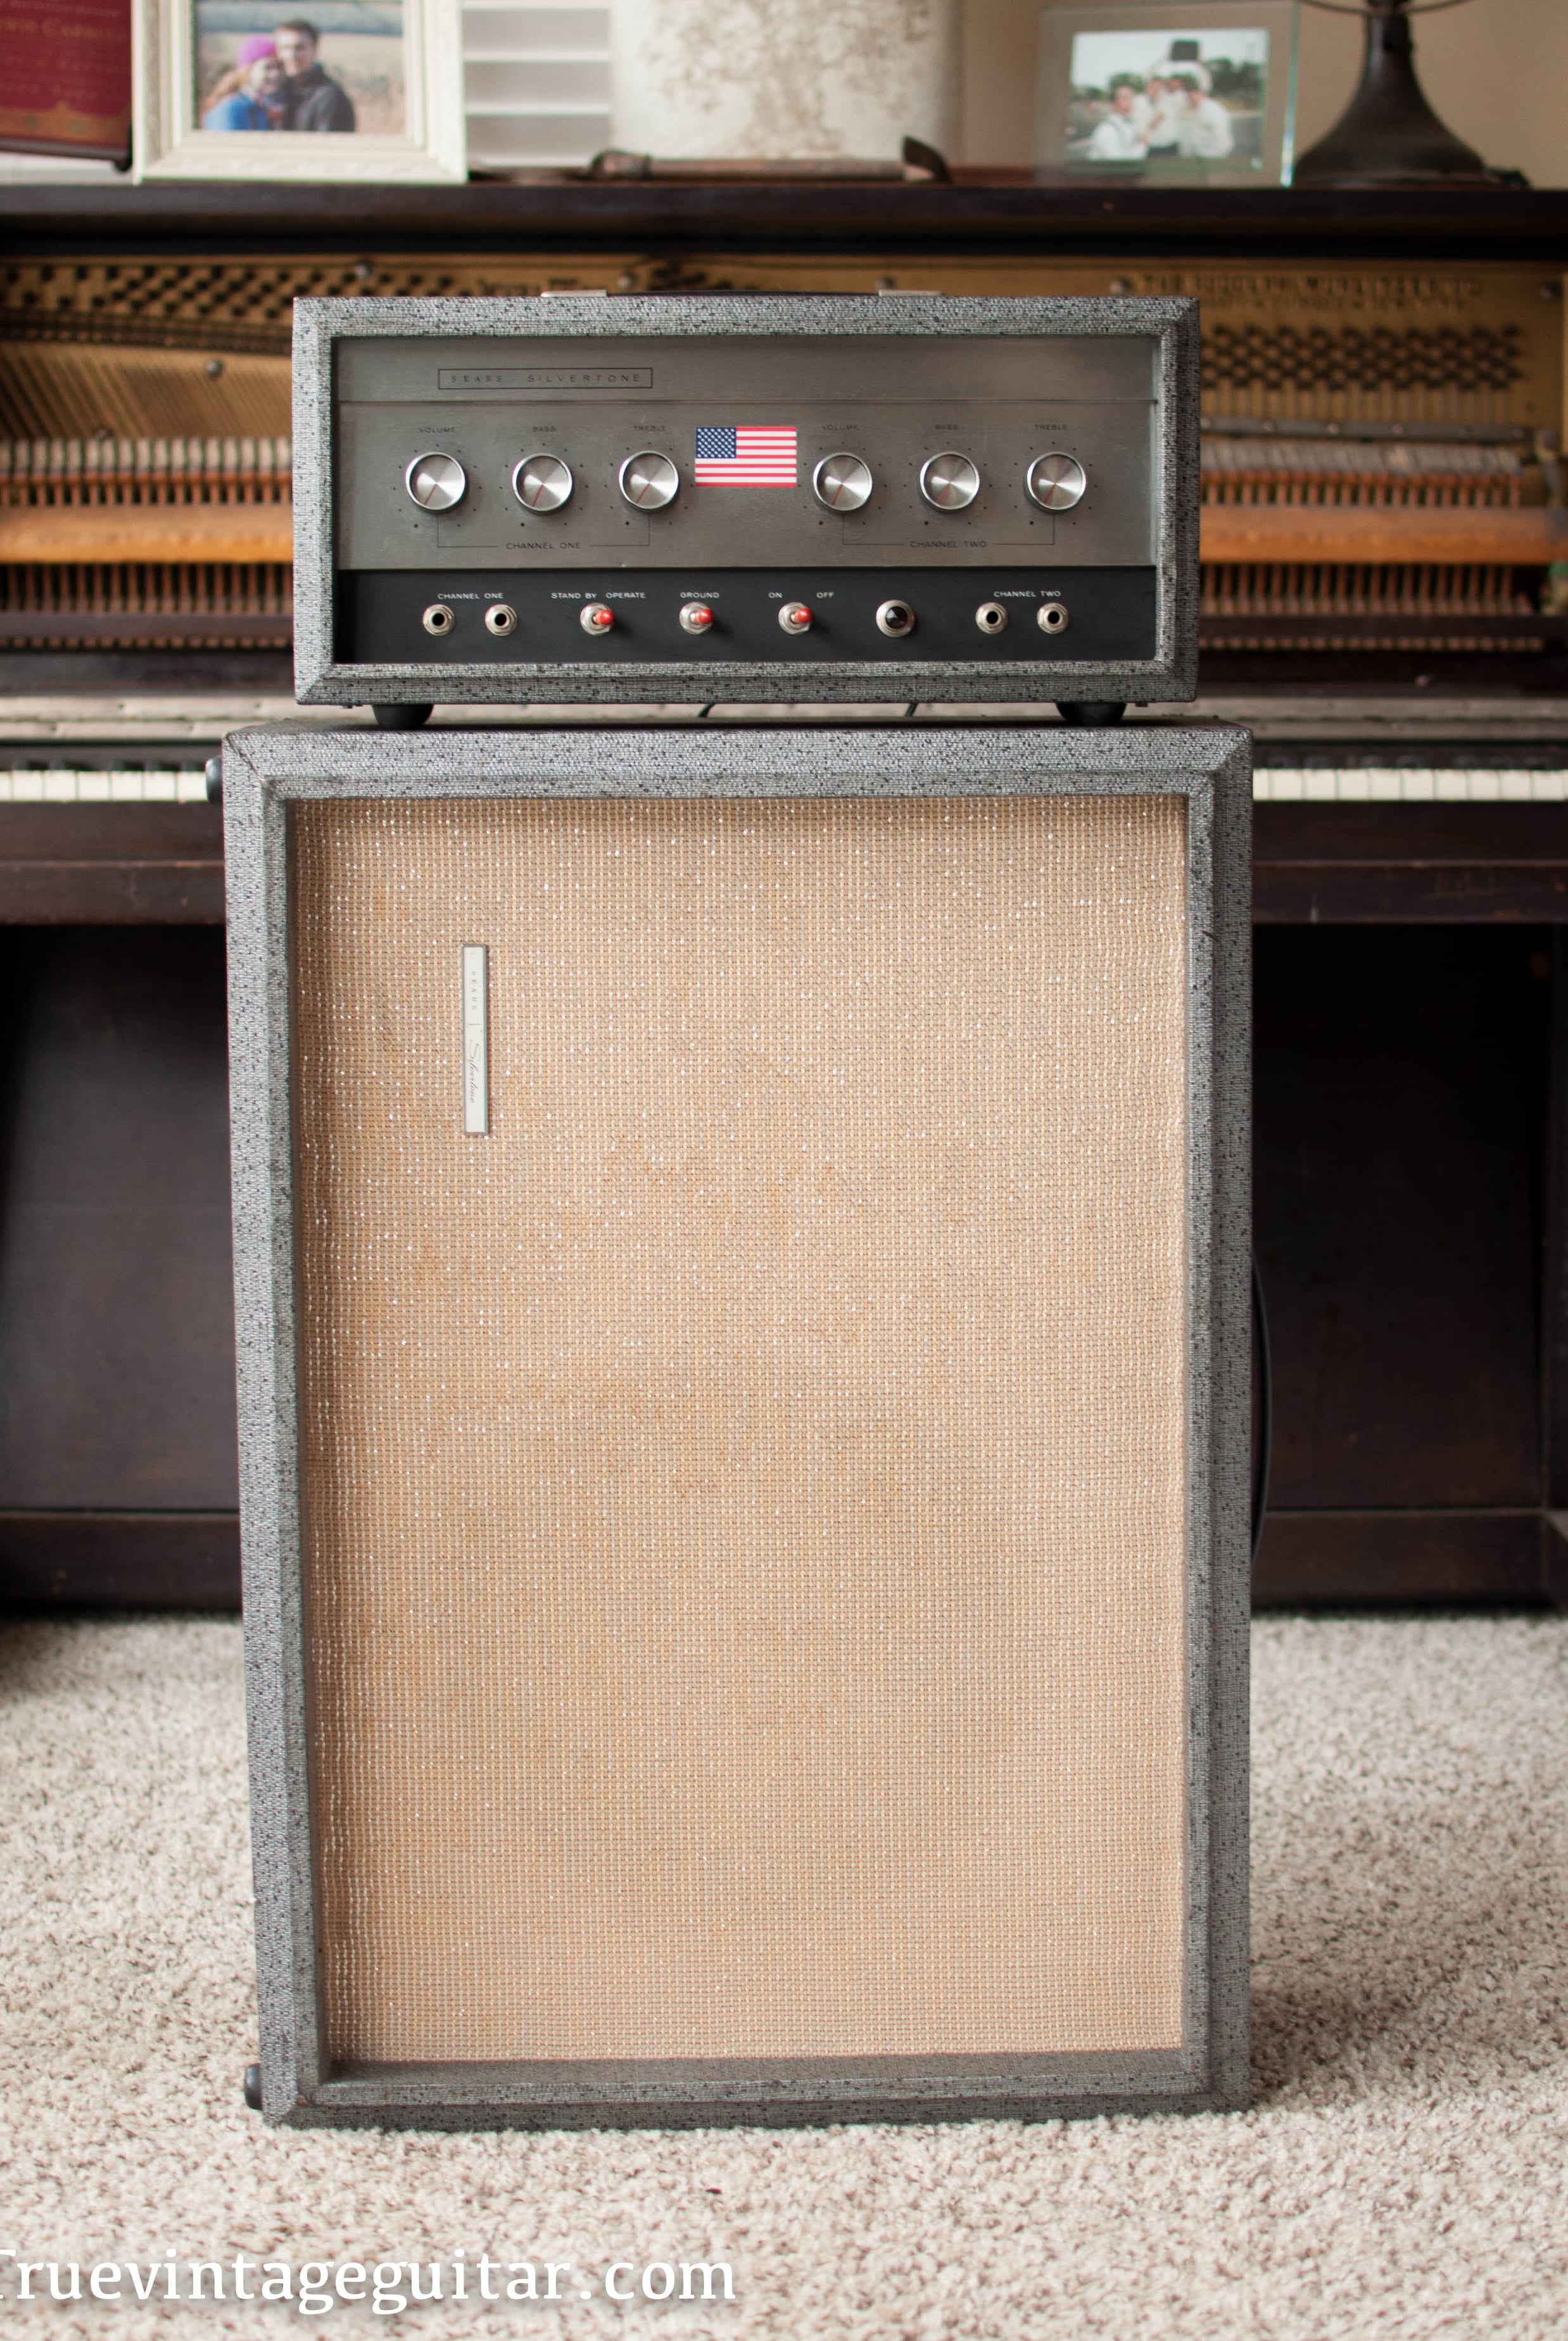 Vintage 1965 Silvertone 1483 guitar amplifier